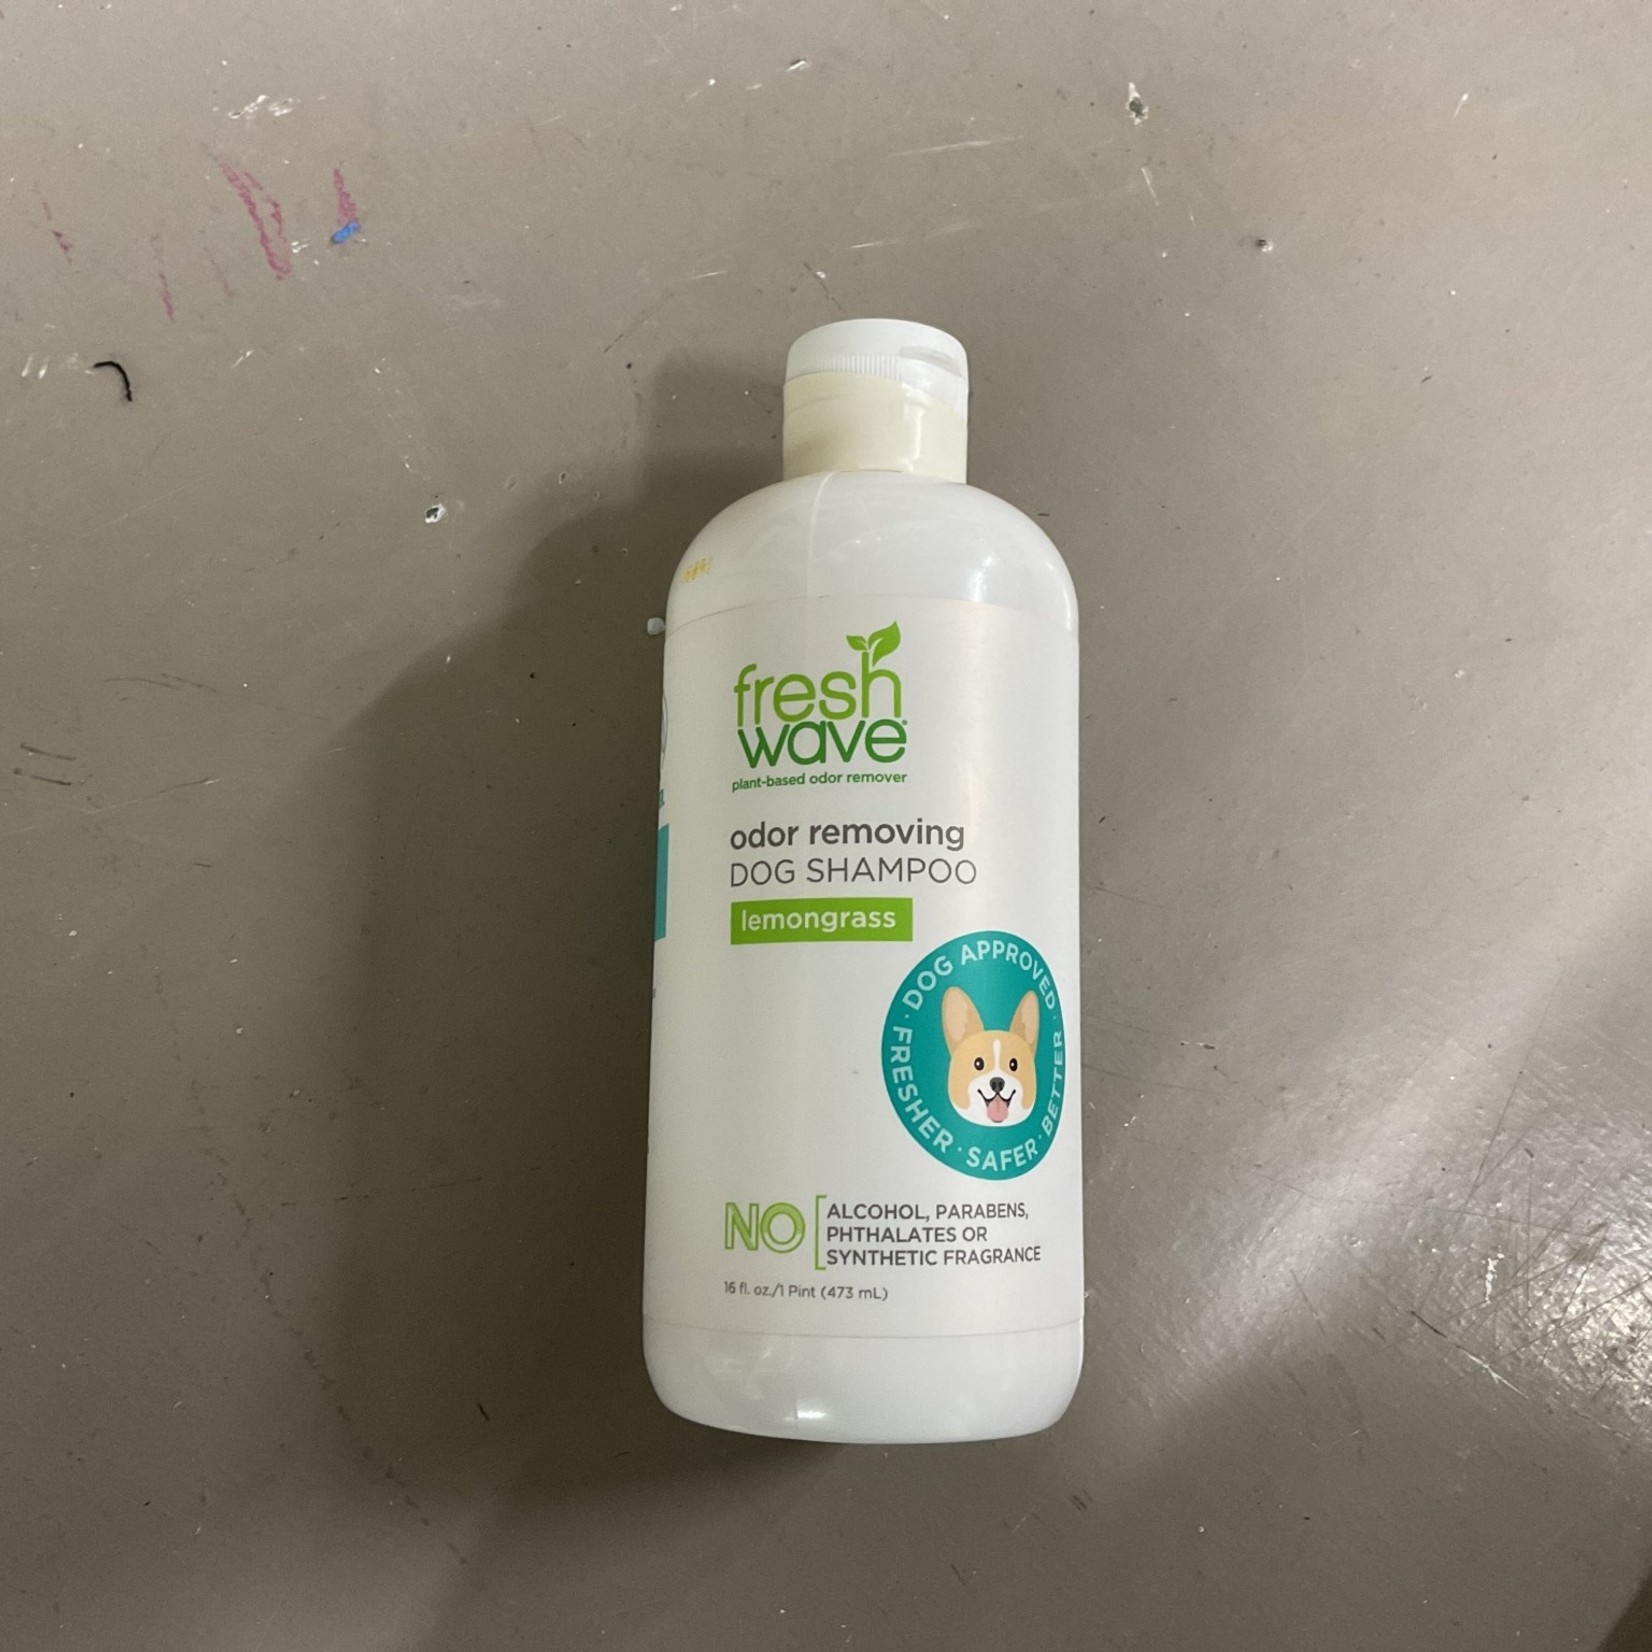 Fresh Wave Odor Removing Dog Shampoo Lemongrass 16 oz